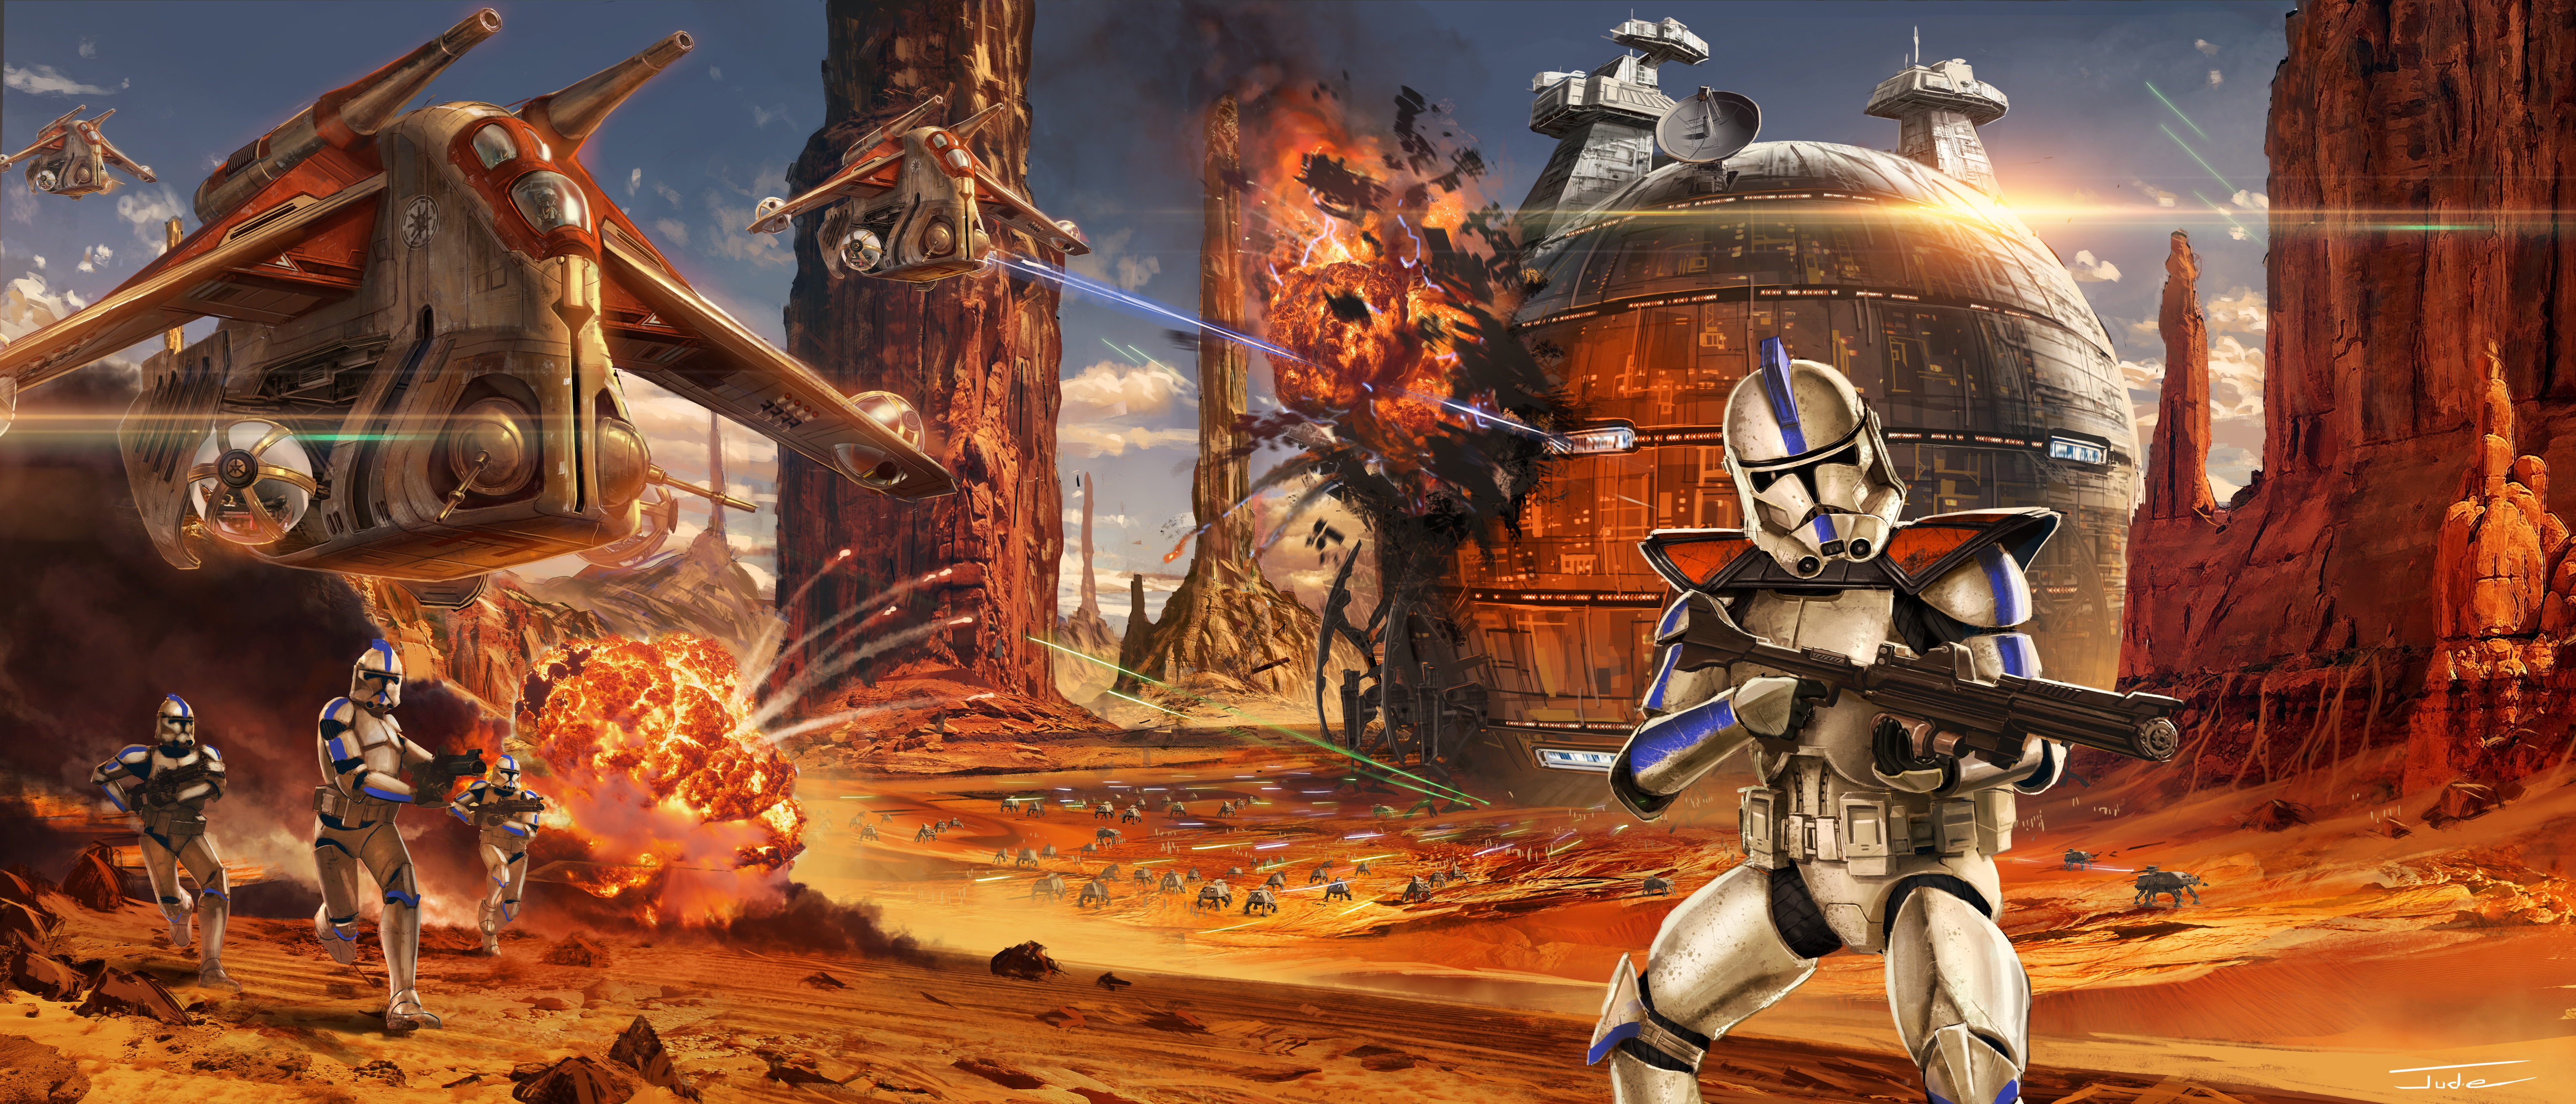 Battle Clone Trooper Explosion Spaceship Star Wars Warrior Weapon 6300x2700